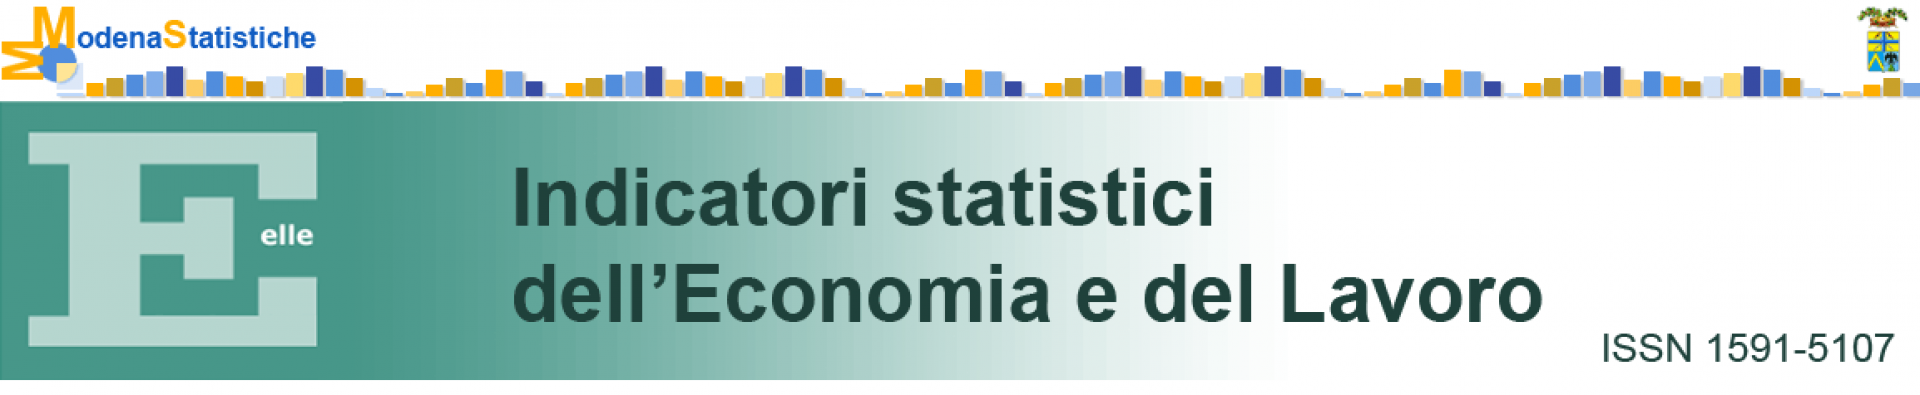 E ELLE – Indicatori statistici dell’Economia e del Lavoro - ISSN 1591-5107 - sulla destra in alto logo della Provincia di Modena